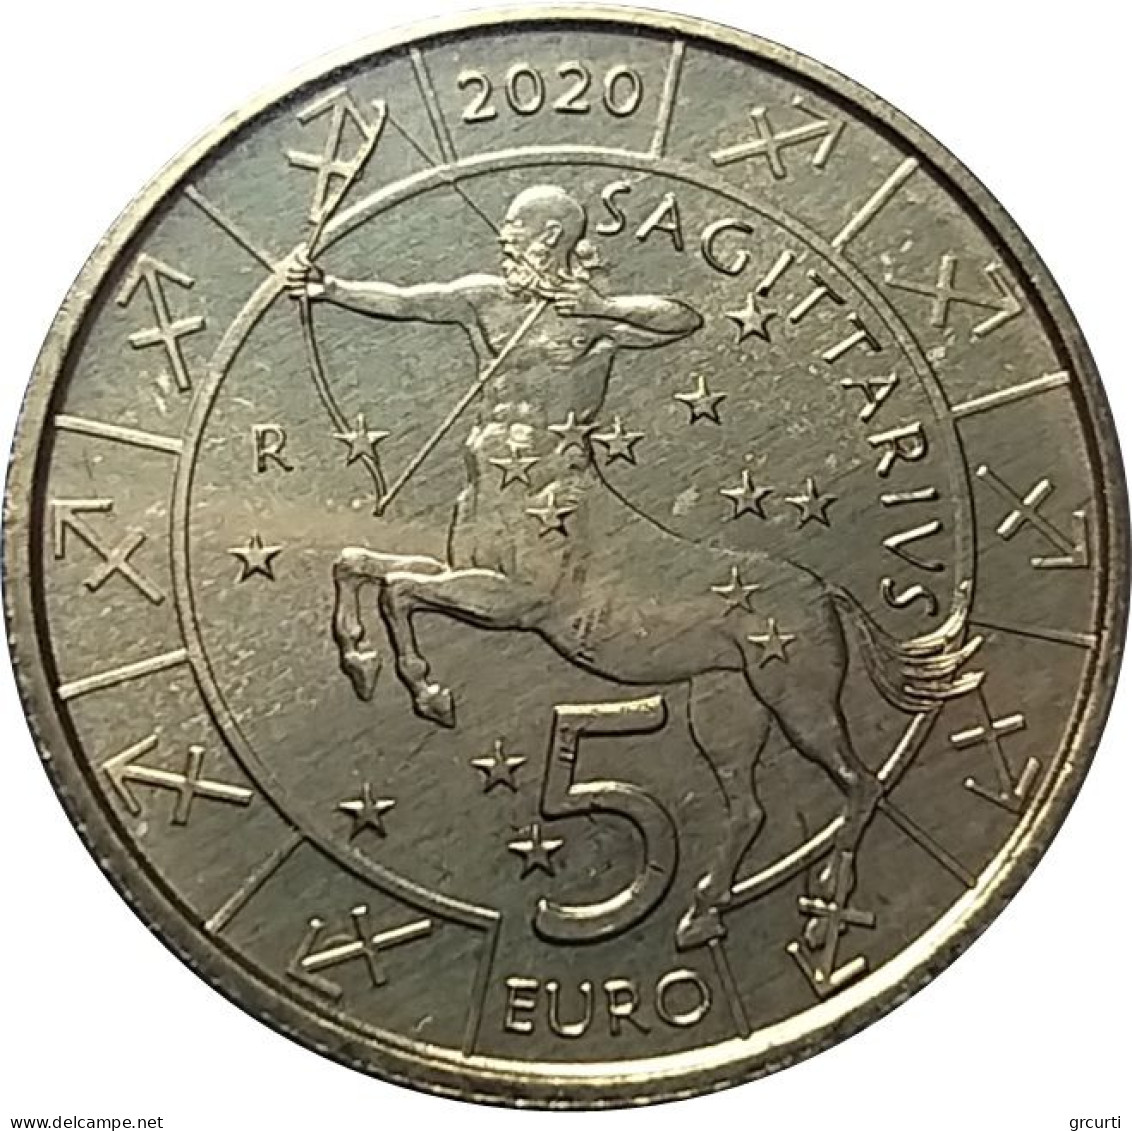 San Marino - 5 Euro 2019÷2021 - Segni dello zodiaco - 12 monete